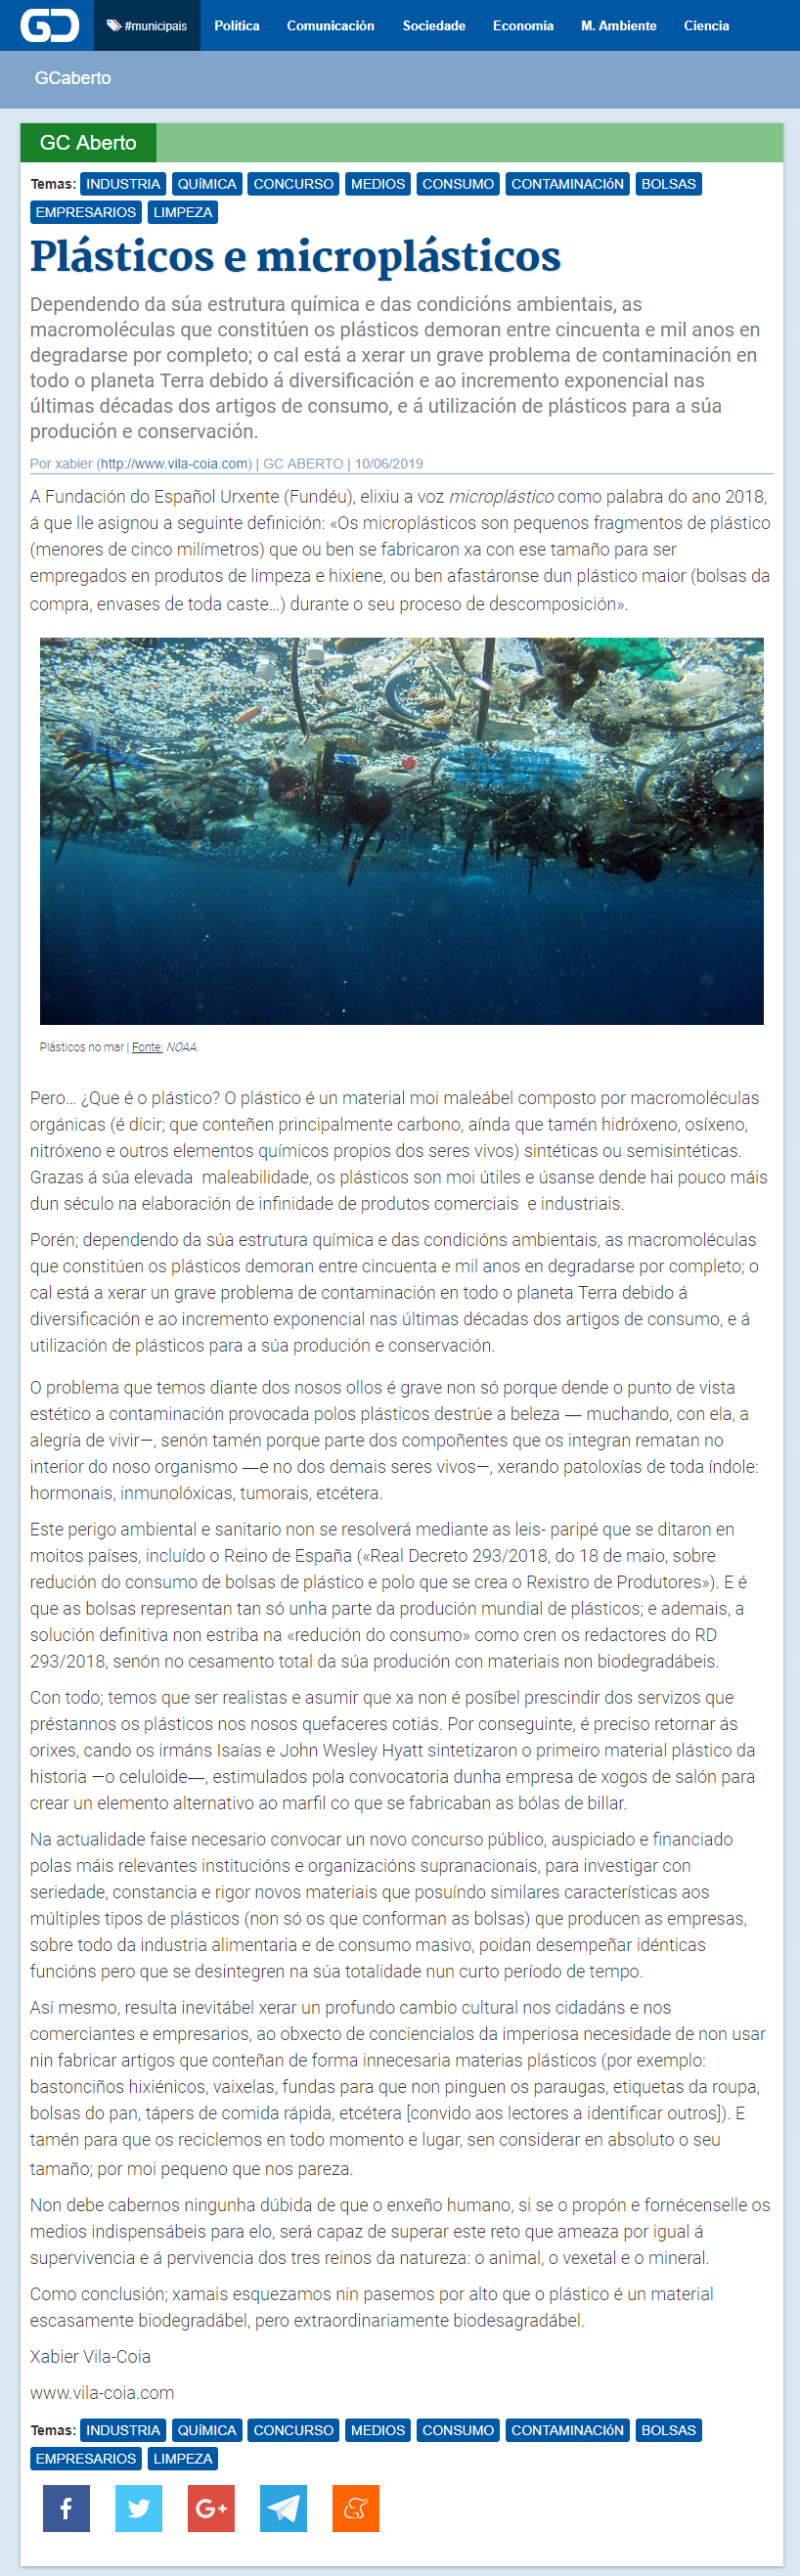 Artigo de opinión de Xabier Vila-Coia  titulado "Plásticos e microplásticos", publicado no xornal dixital Galicia Confiencial o luns 10 de xuño de 2019.